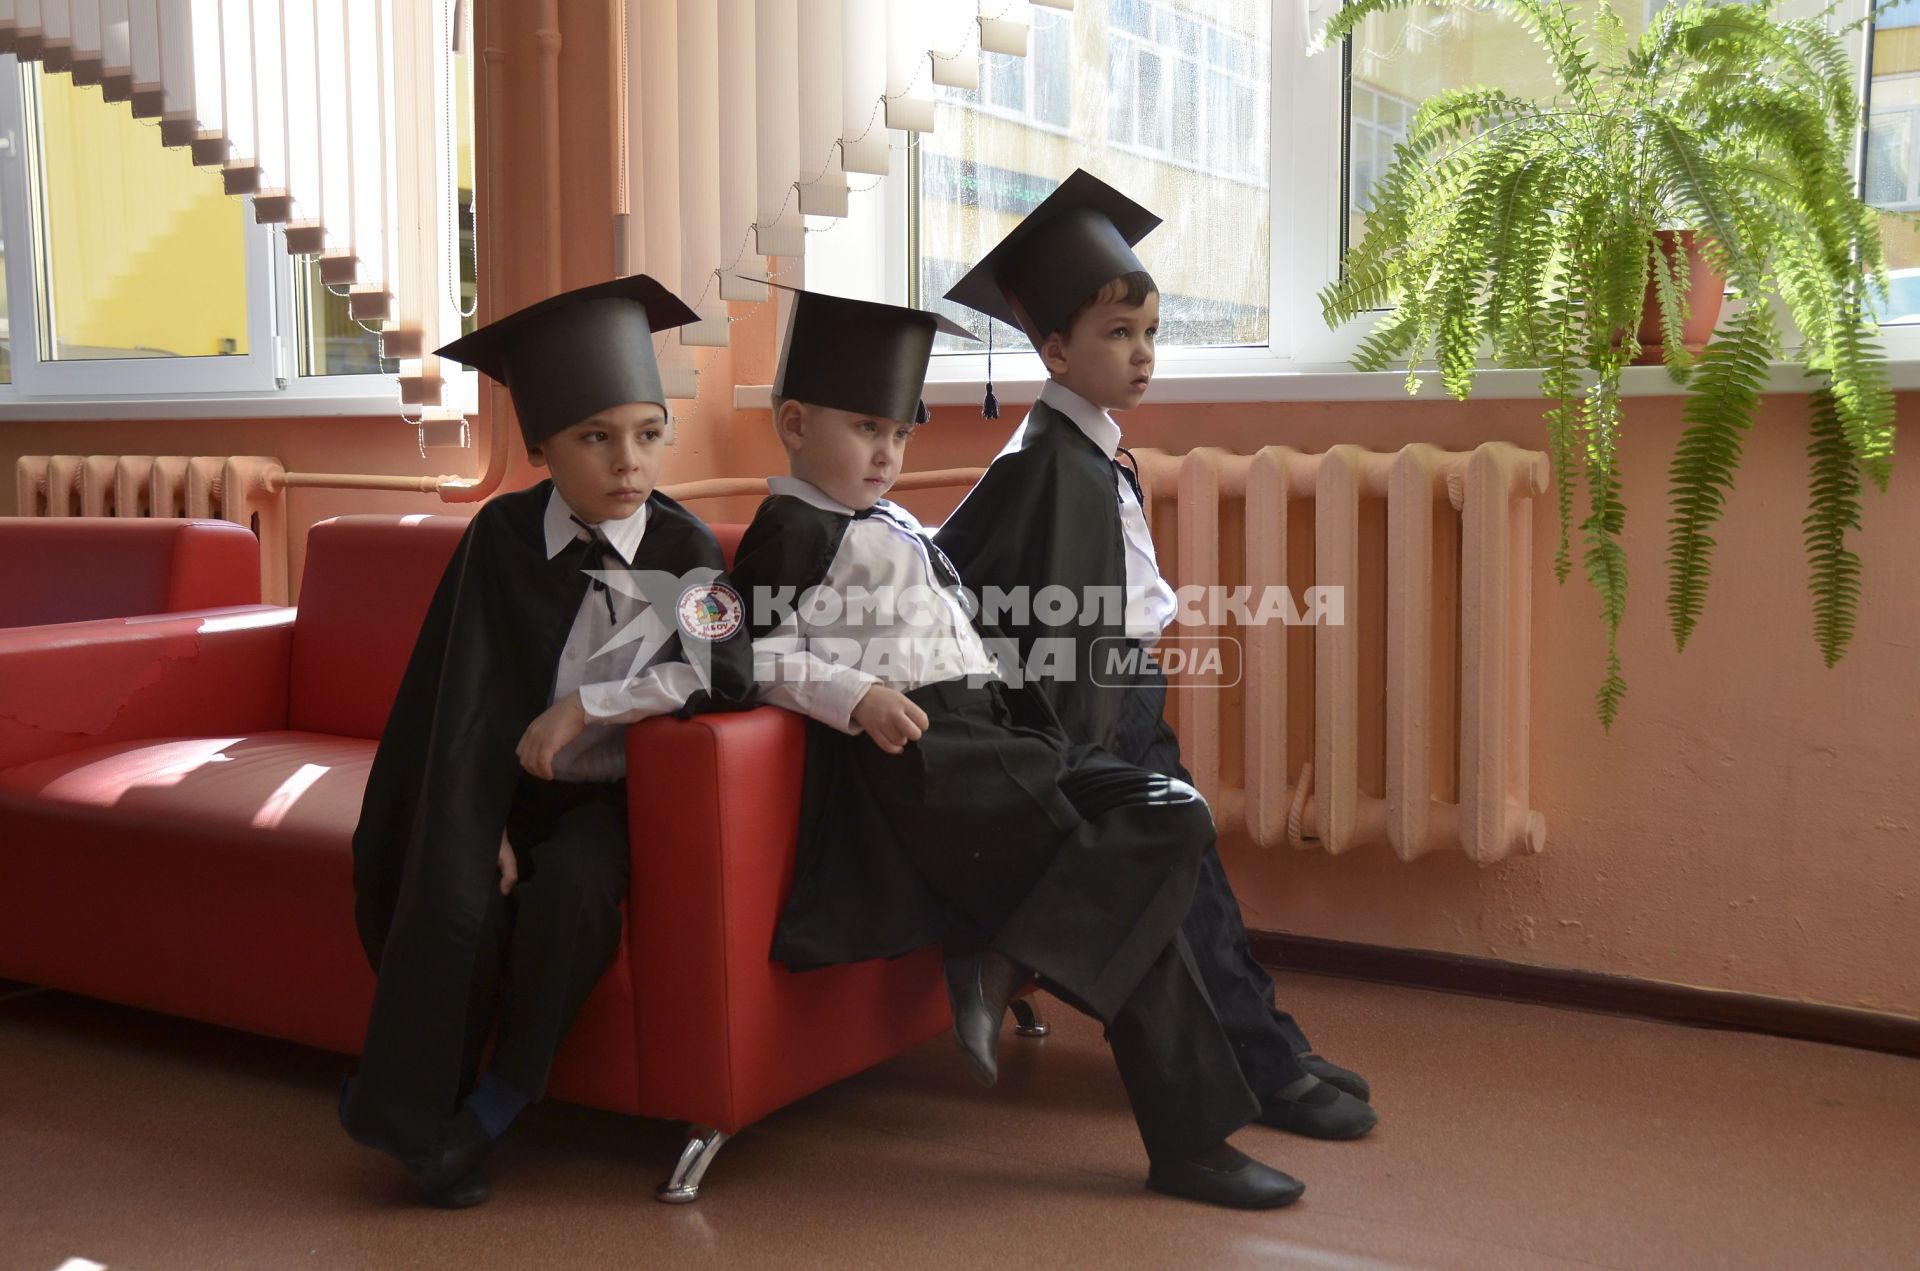 Тула. Ученики  первого класса Центра образования # 7 в мантии и шапочке  бакалавра.